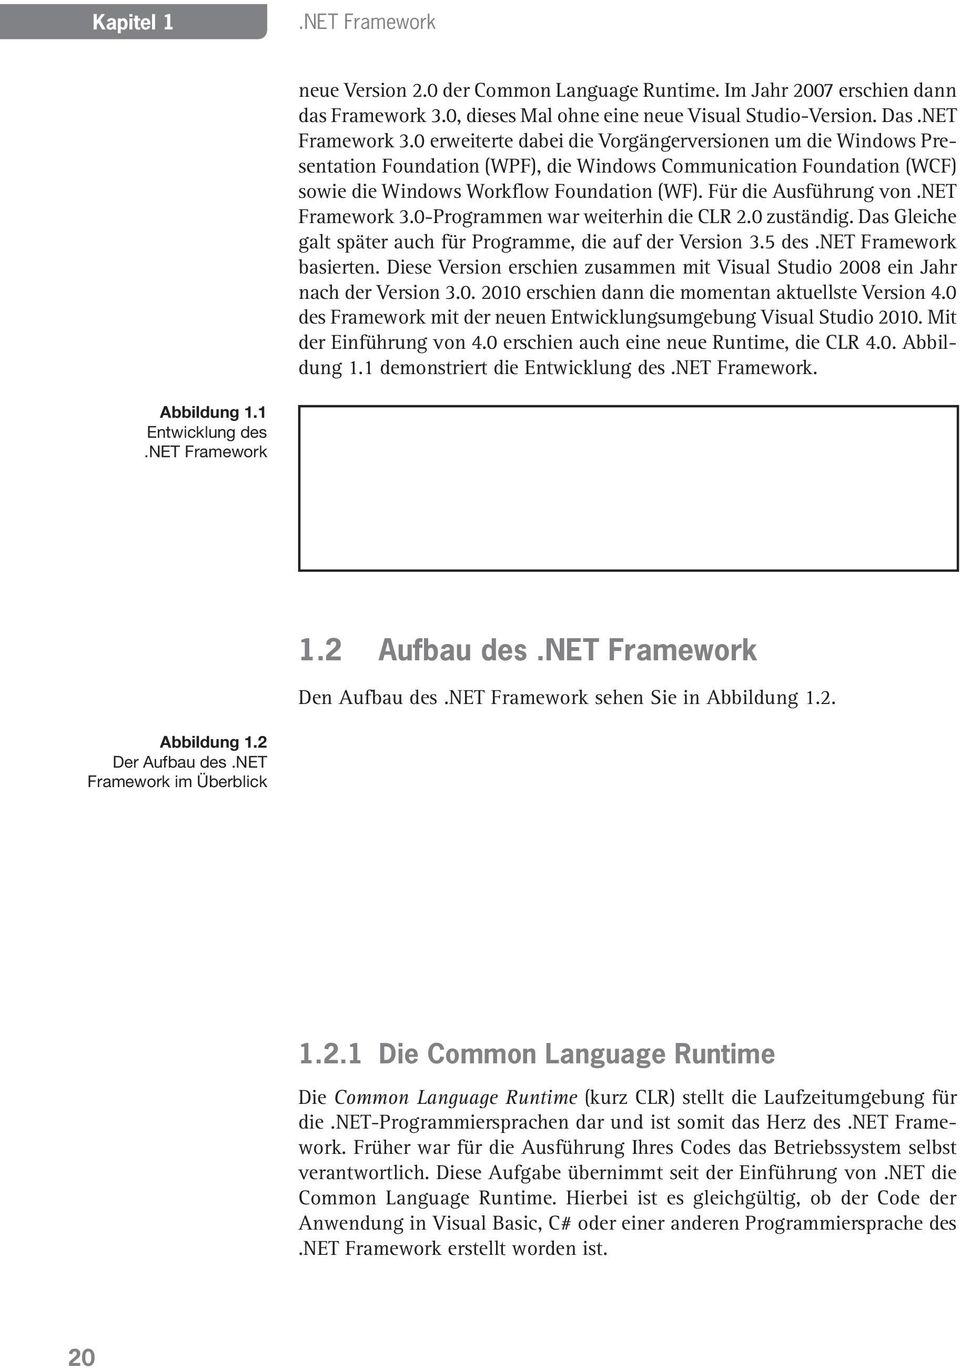 net Framework 3.0-Programmen war weiterhin die CLR 2.0 zuständig. Das Gleiche galt später auch für Programme, die auf der Version 3.5 des.net Framework basierten.